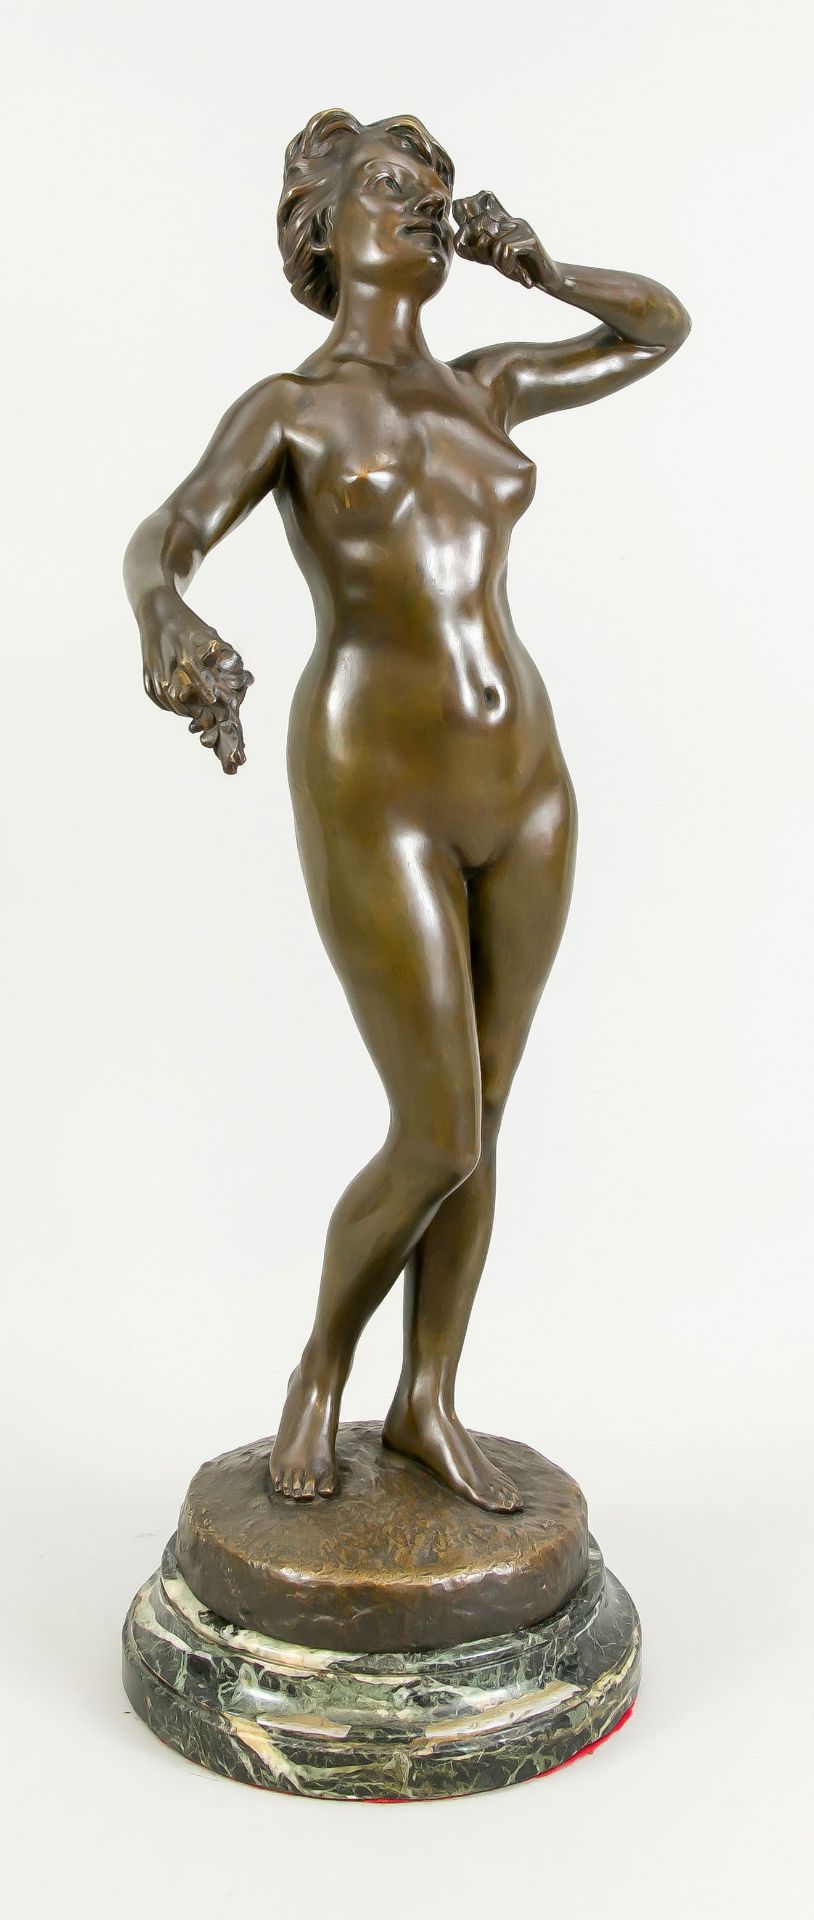 Gustave Louis, frz. um 1900, großer, stehender Akt an einer Blume riechend, patinierte Bronze auf